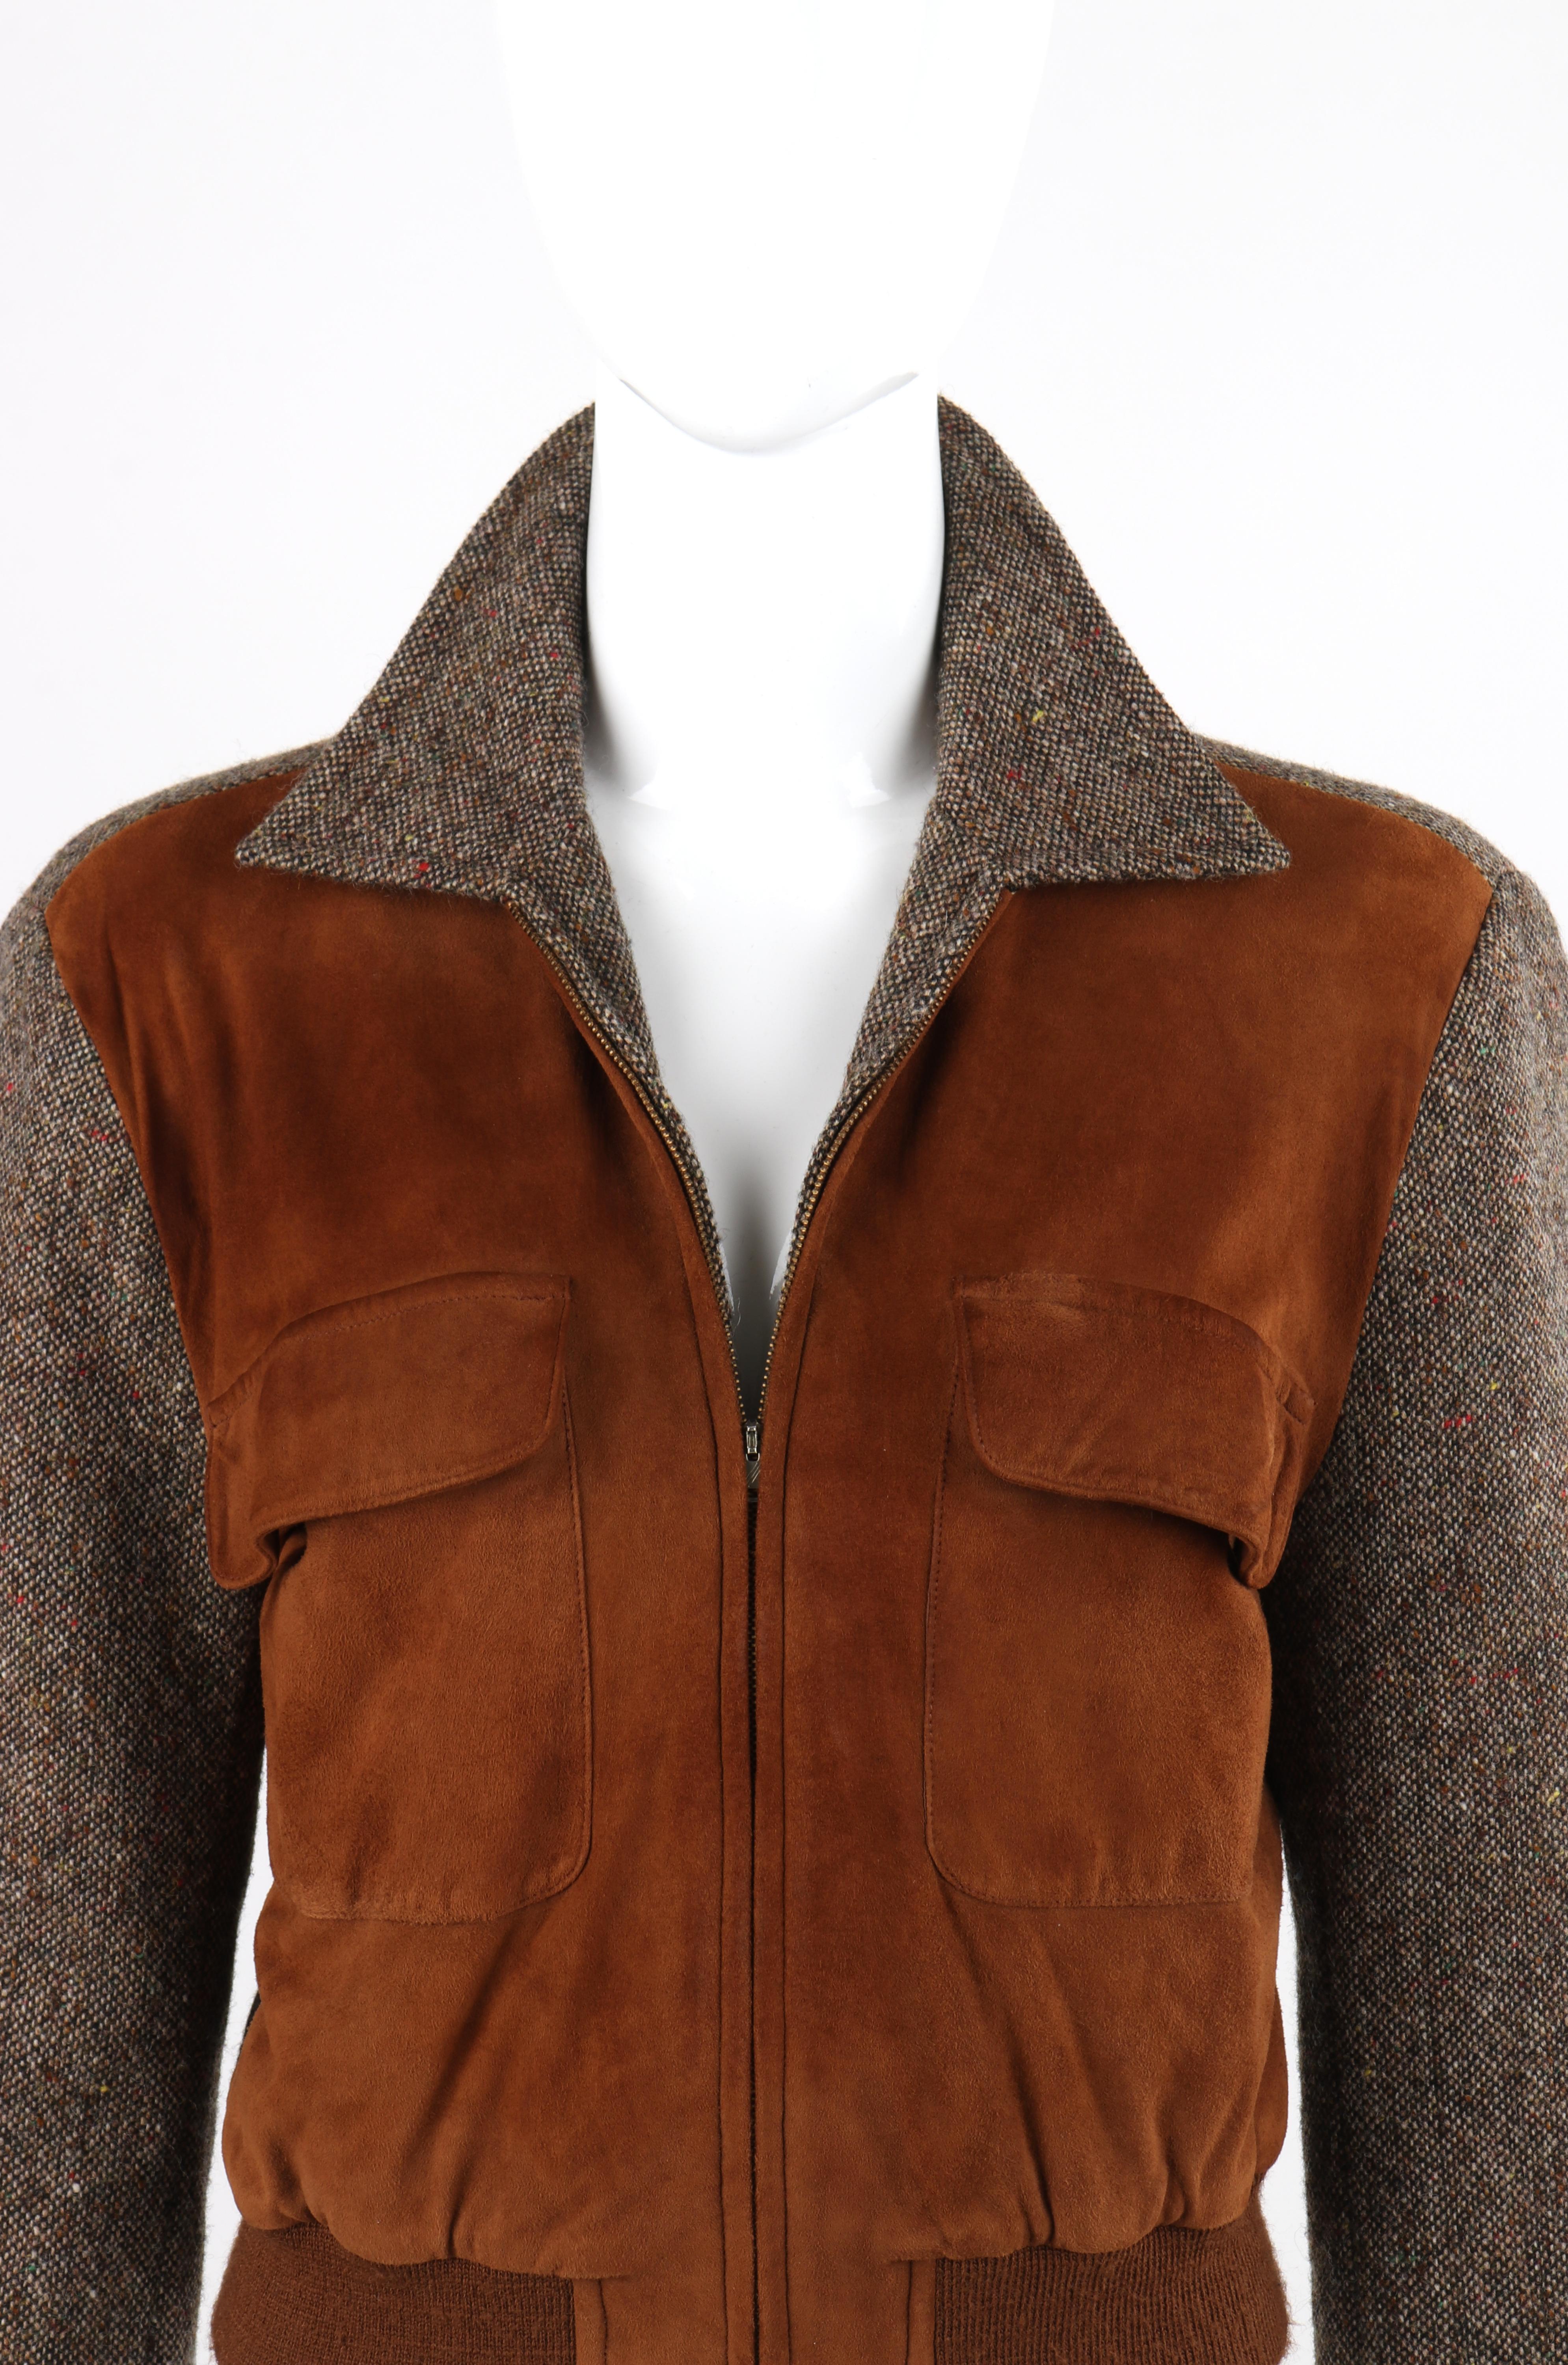 RALPH LAUREN c.1970’s Brown Wool Tweed Suede Leather Crop Blouson Bomber Jacket 1